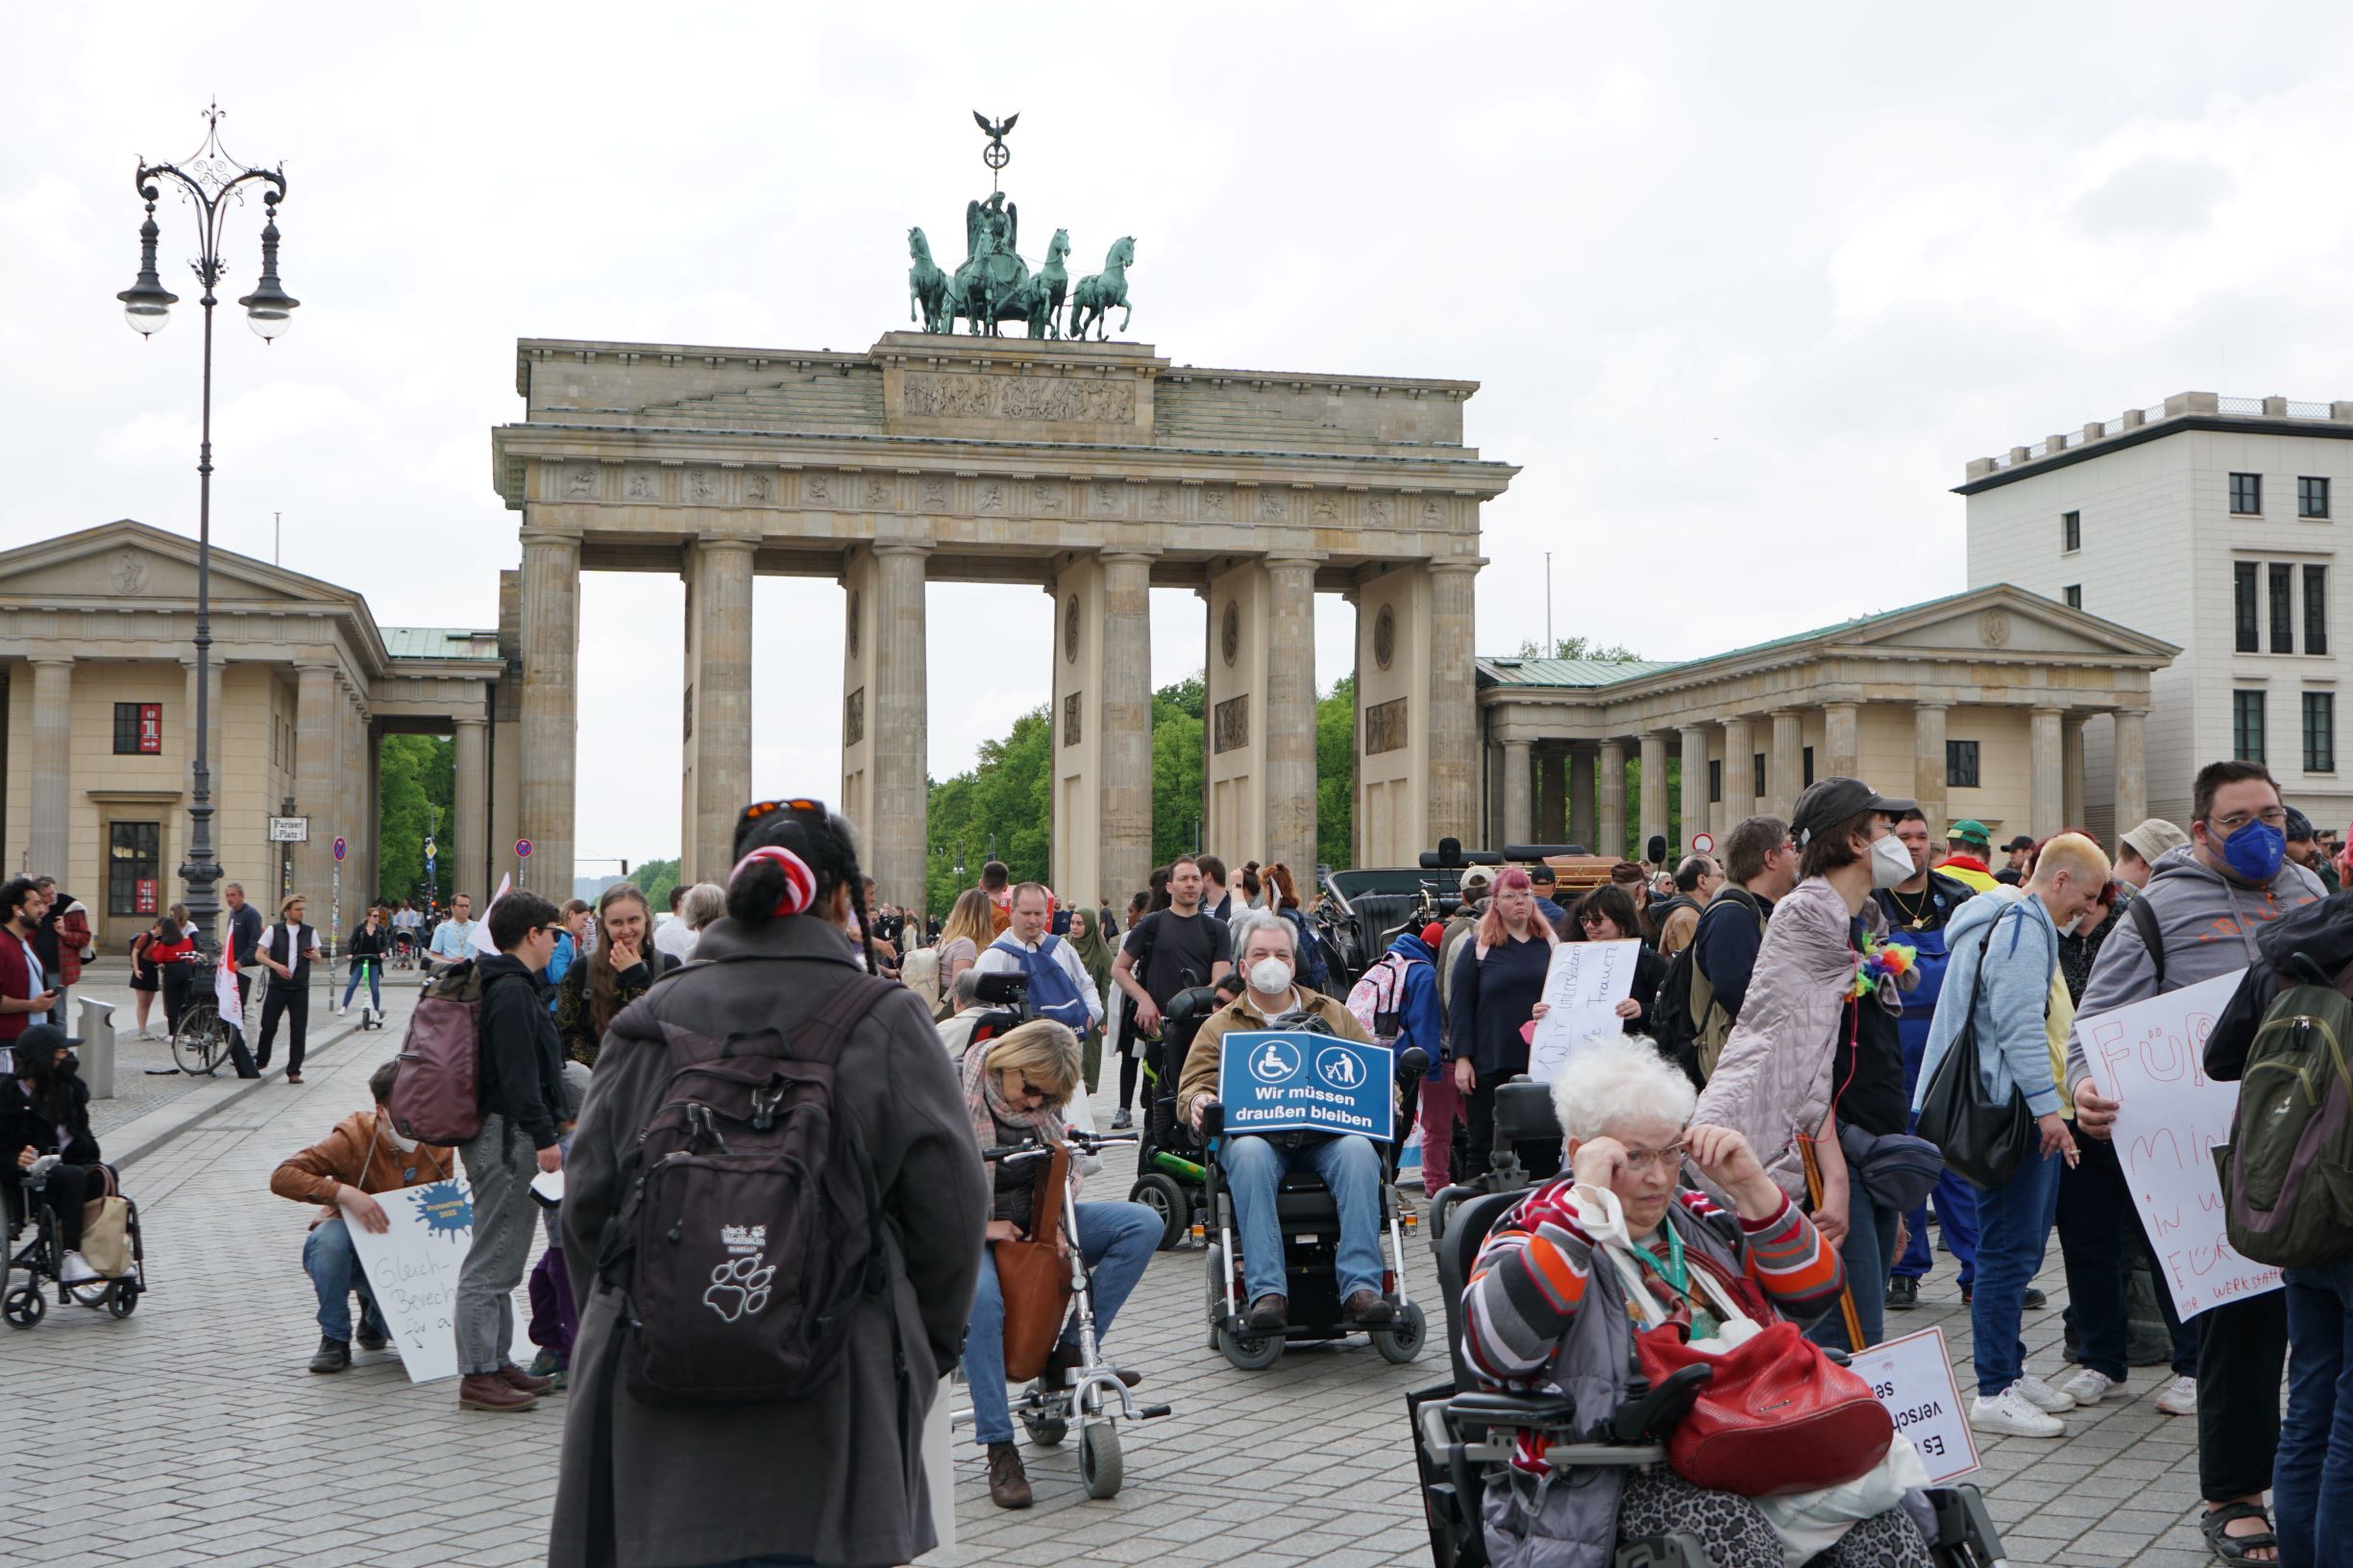 Protest am Brandenburger Tor für die Gleichstellung von Menschen mit Behinderung